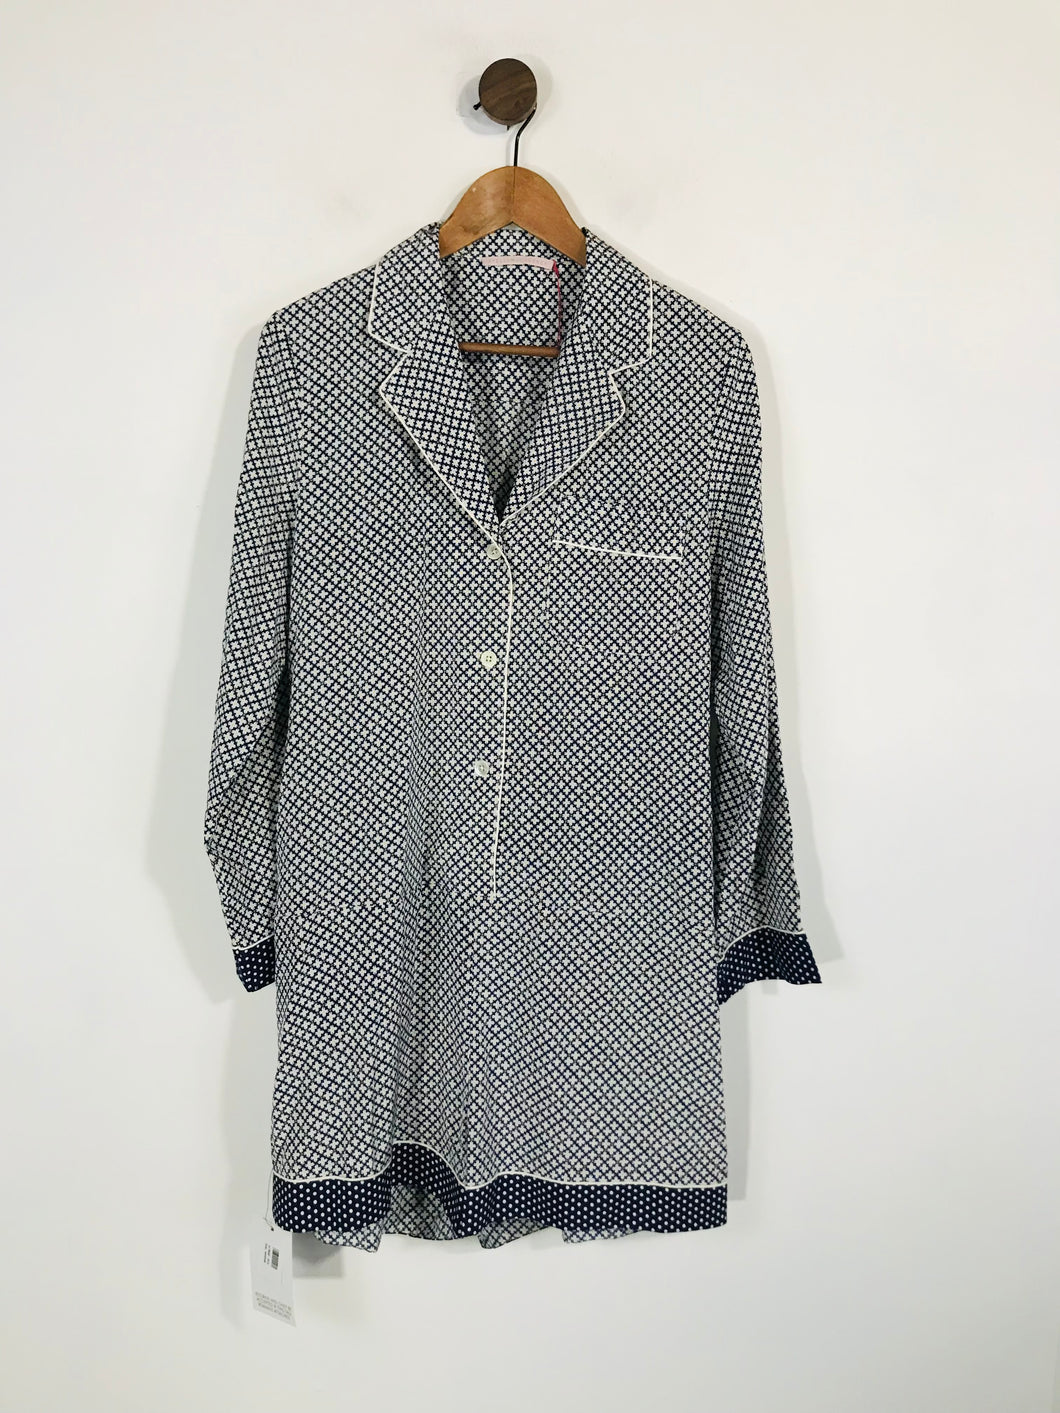 Stella McCartney Women's Silk Loungewear Sleepwear Romper Dress NWT | M UK10-12 | Multicoloured